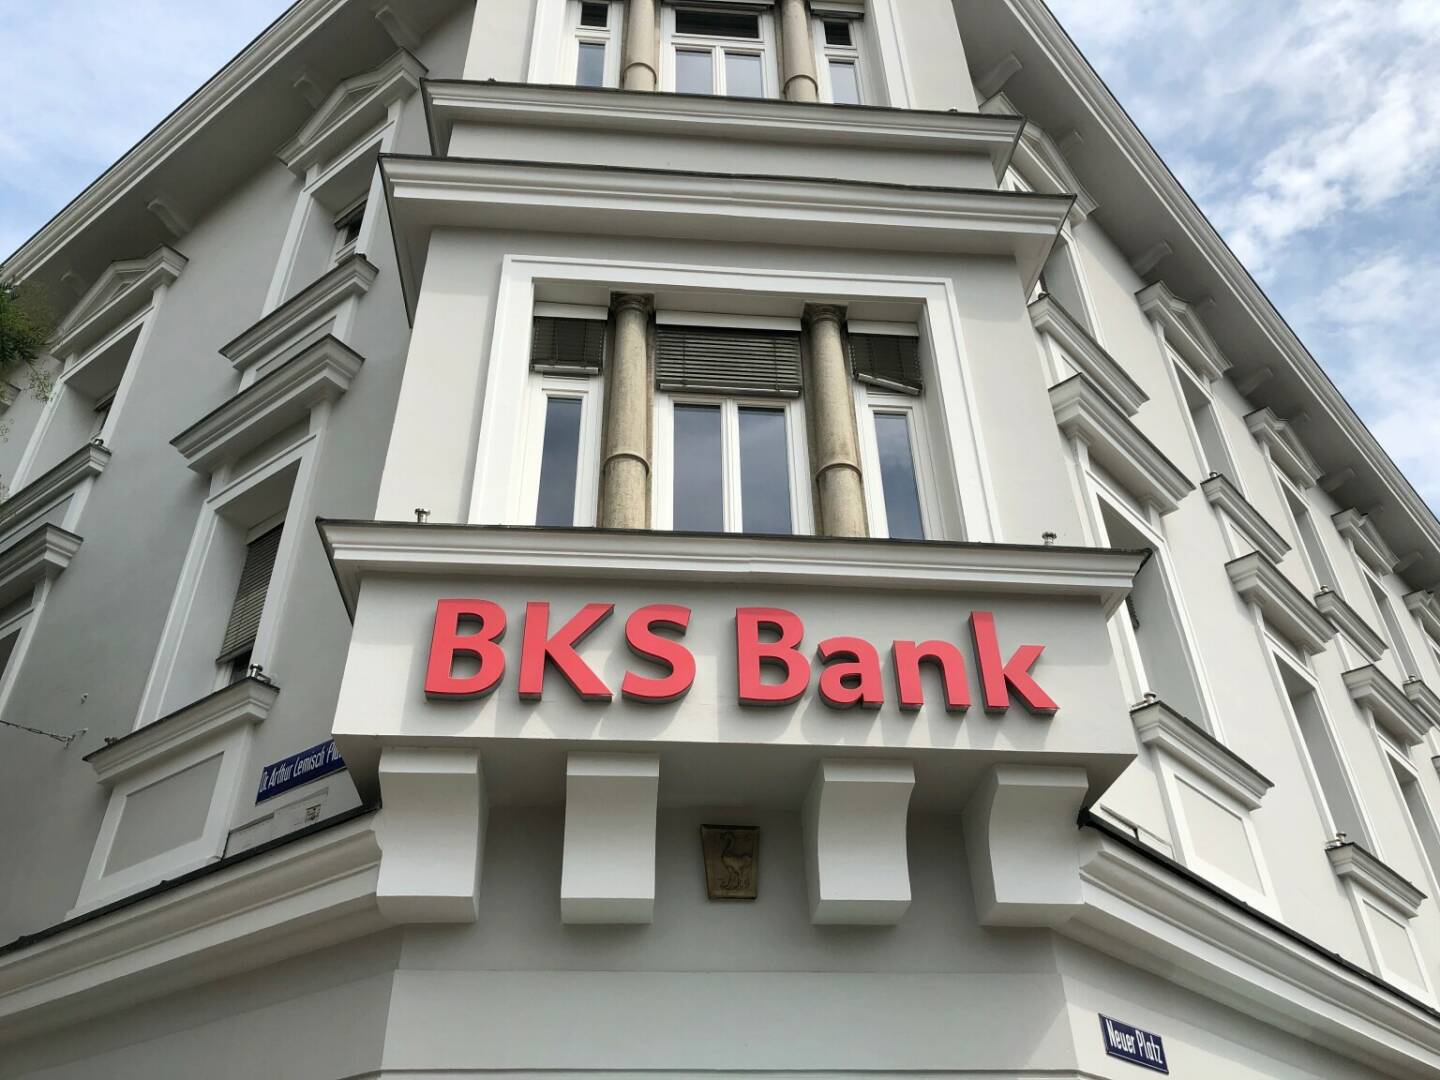 BKS Bank, Klagenfurt, Kärnten, Credit: BSM